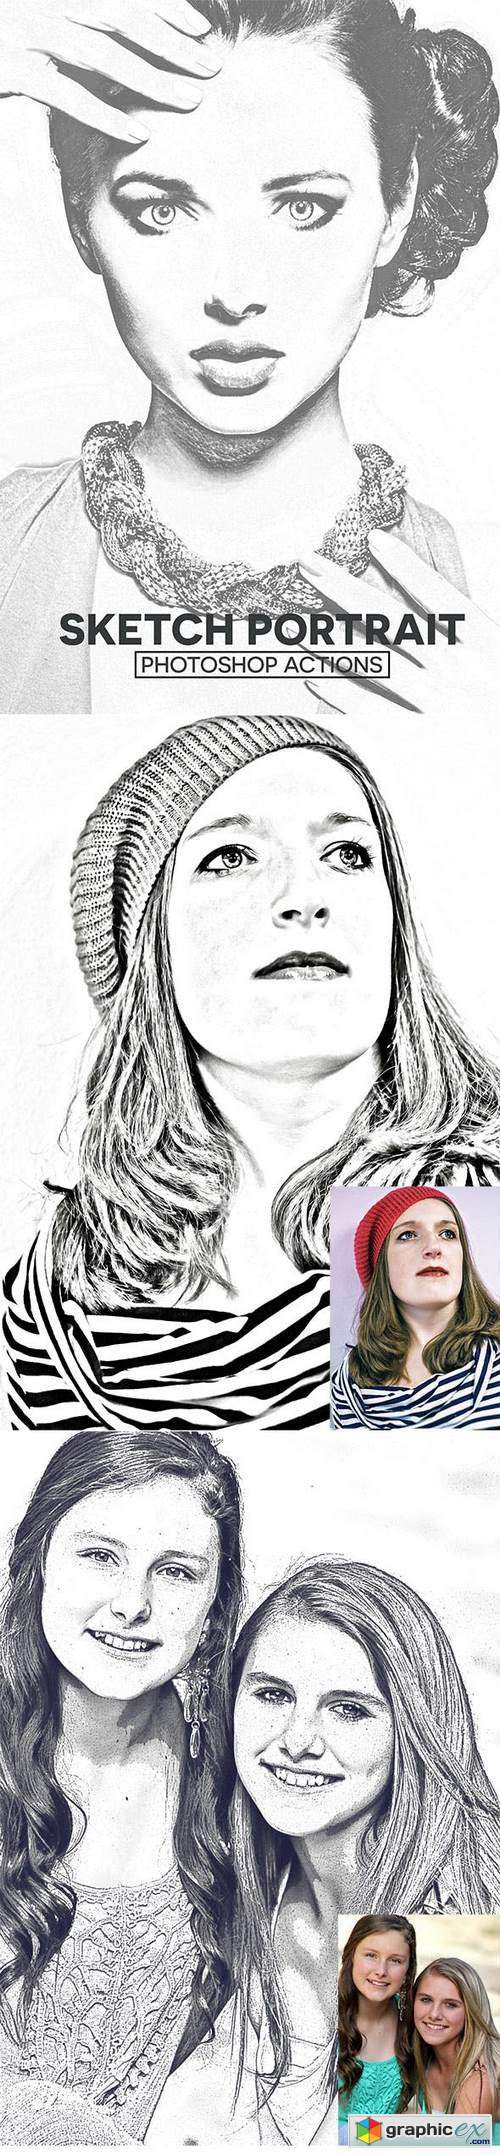 Sketch Portrait Photoshop Actions